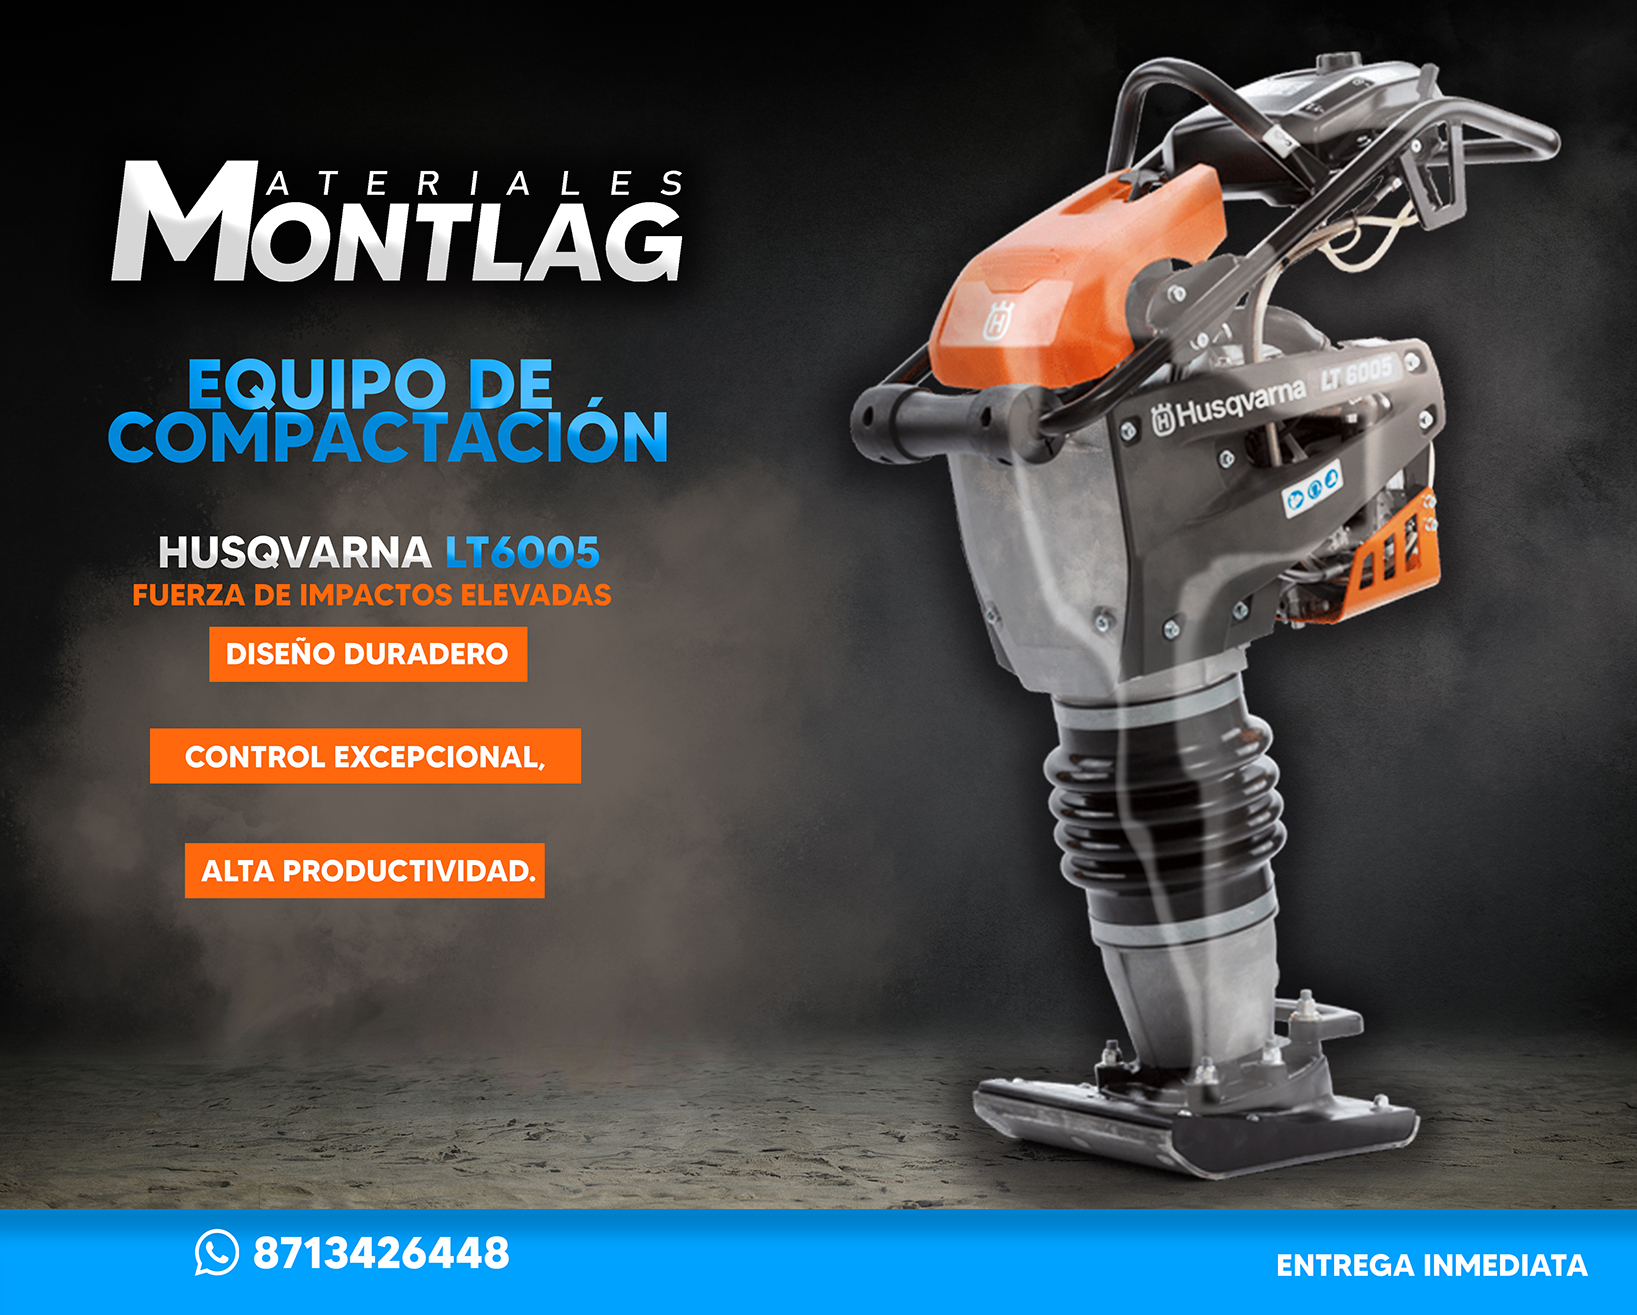 Materiales Montlag - EQUIPO DE COMPACTACION LT6005